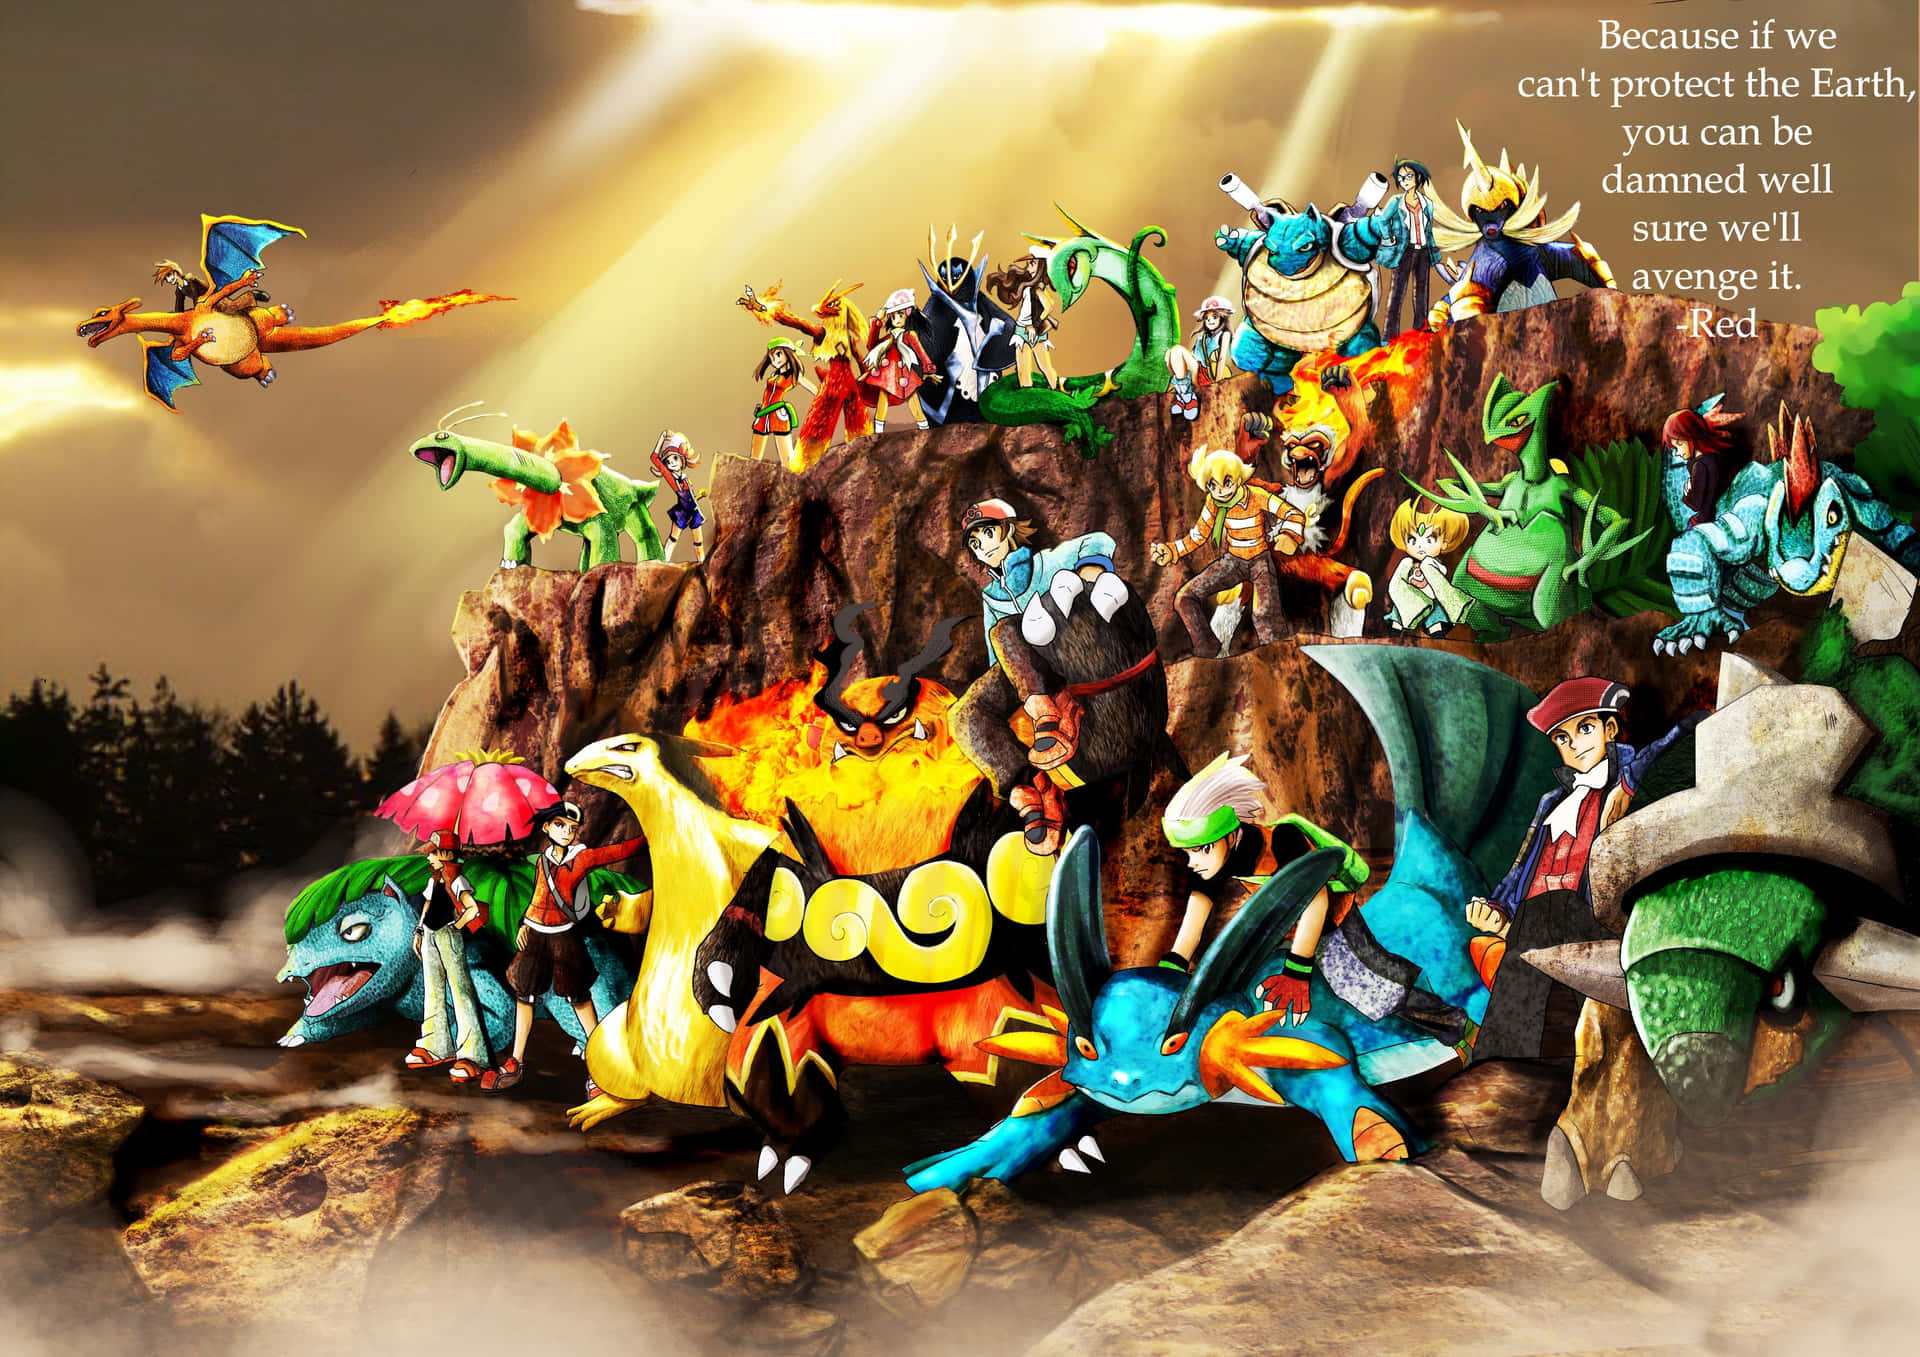 Pokemonen Grupp Av Karaktärer På En Sten